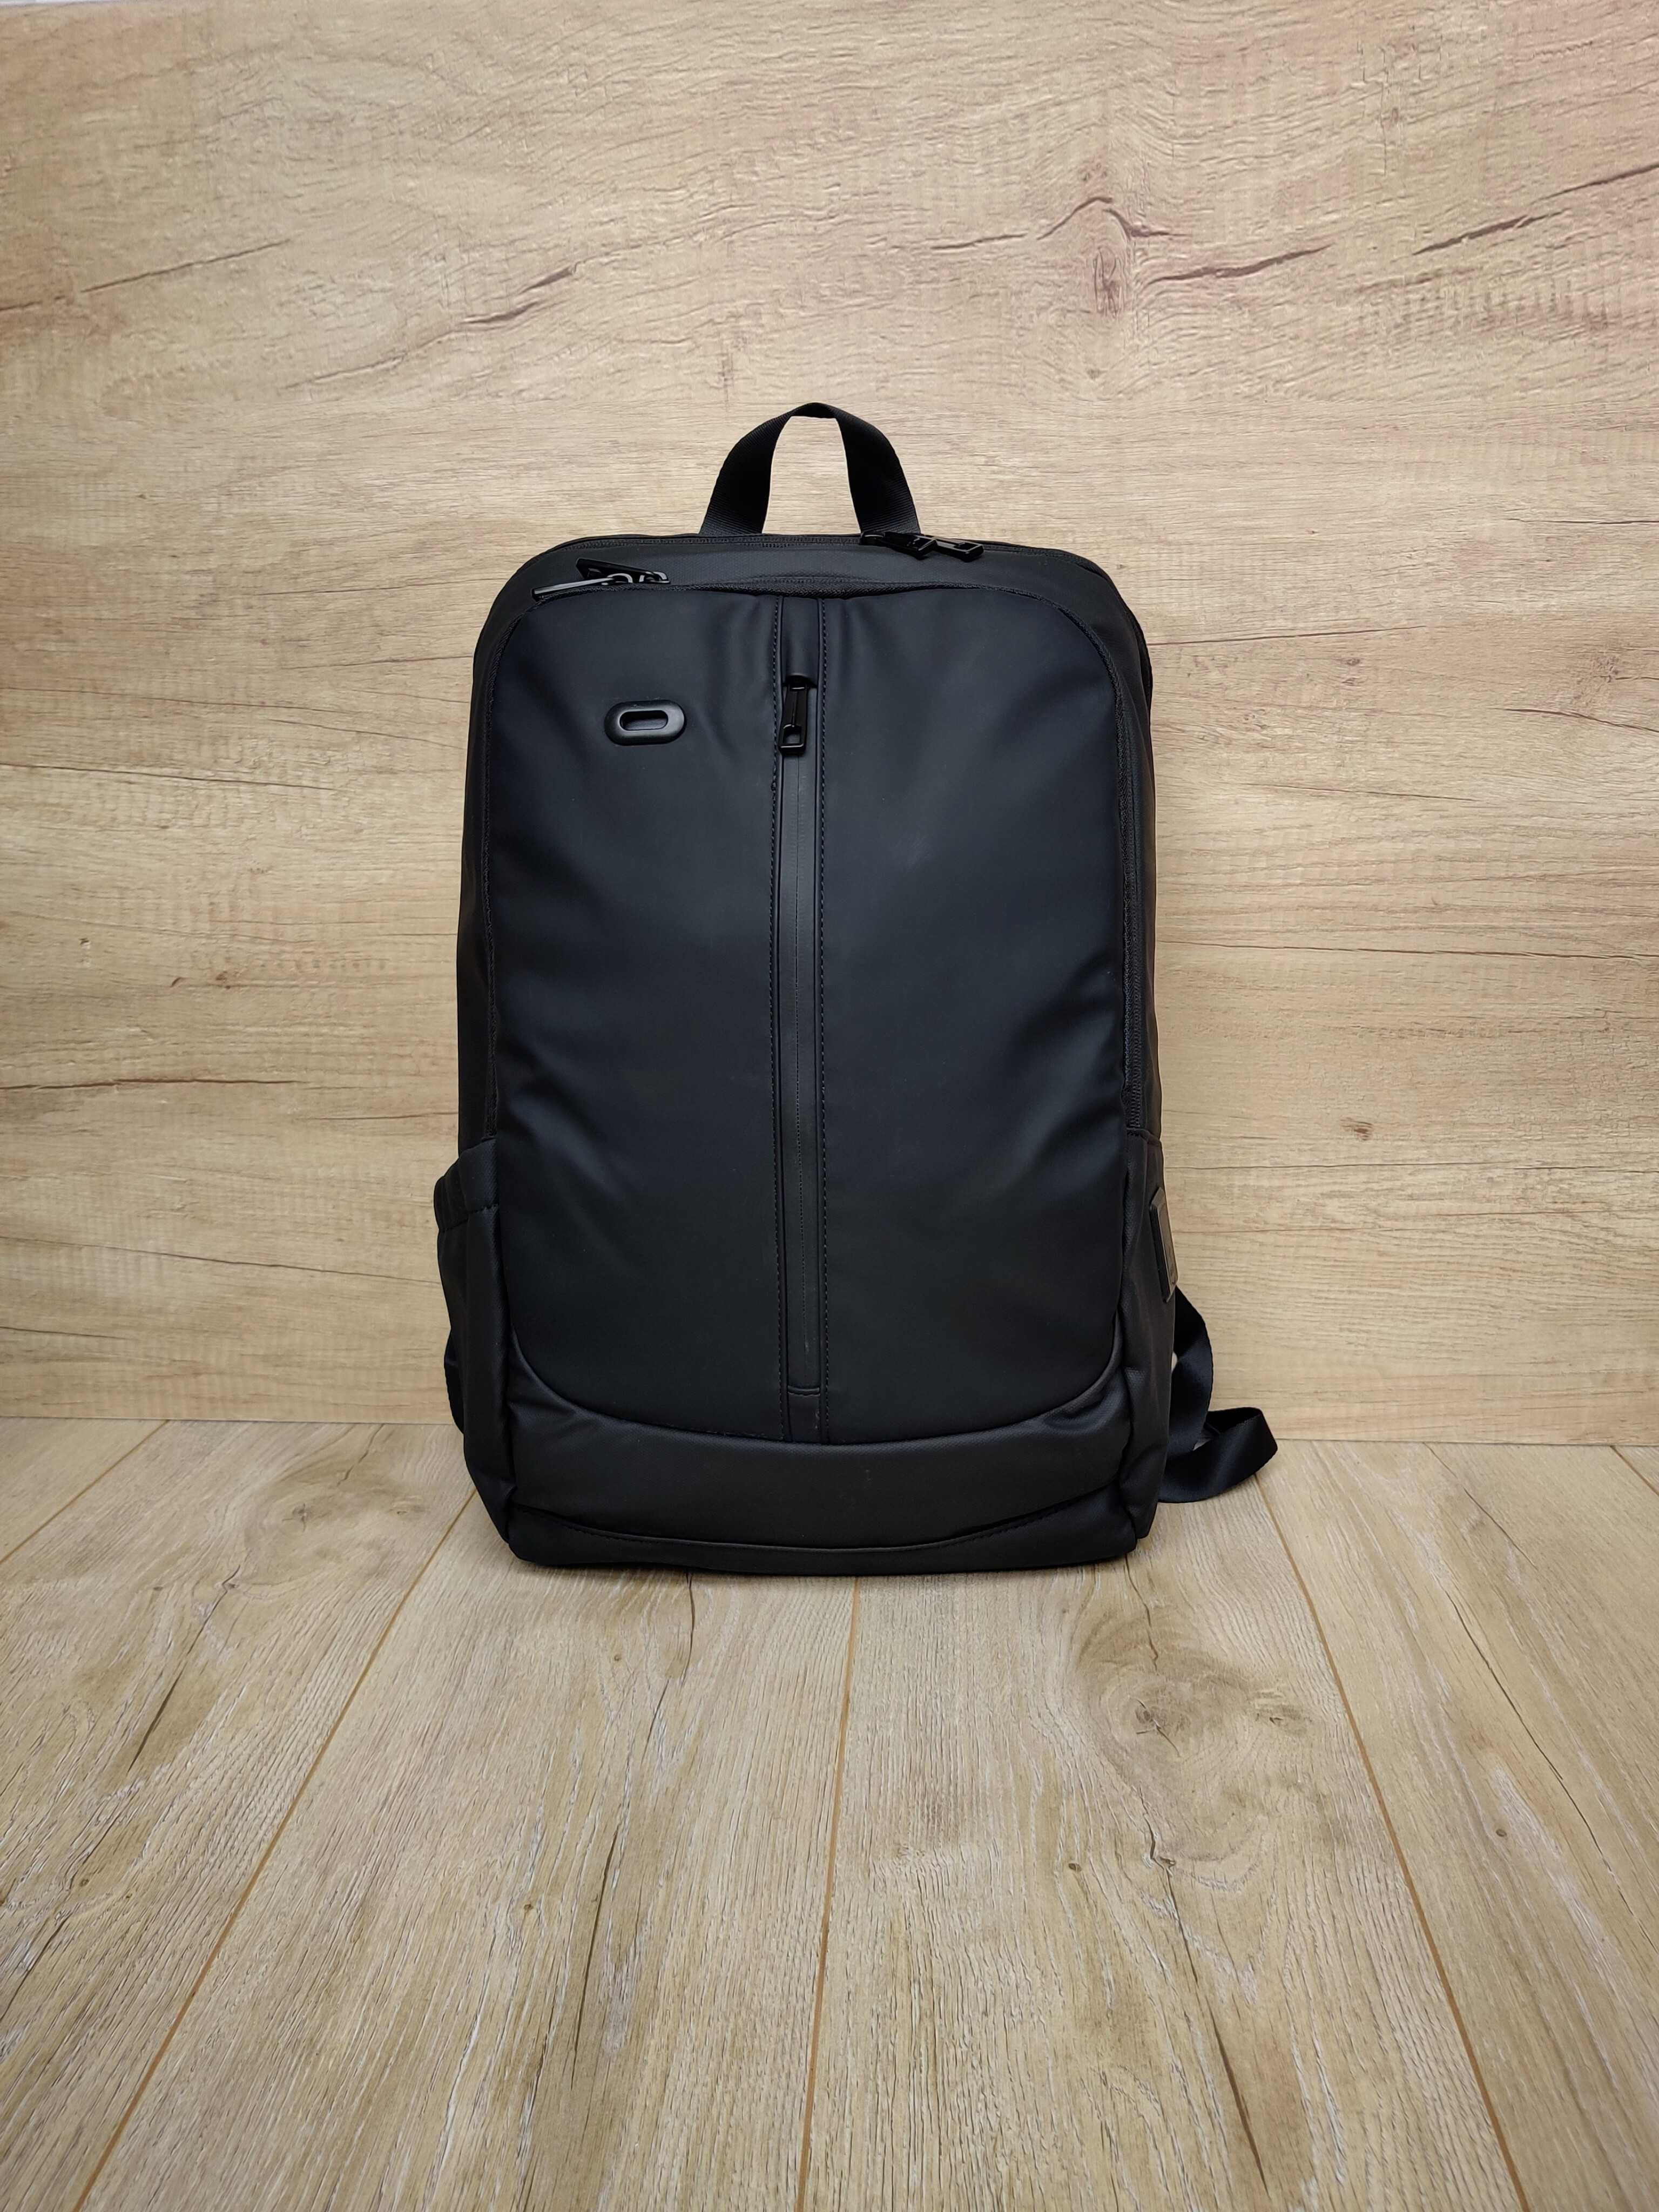 847 Чорний міський рюкзак для ноутбука, зручно для роботи або навчання